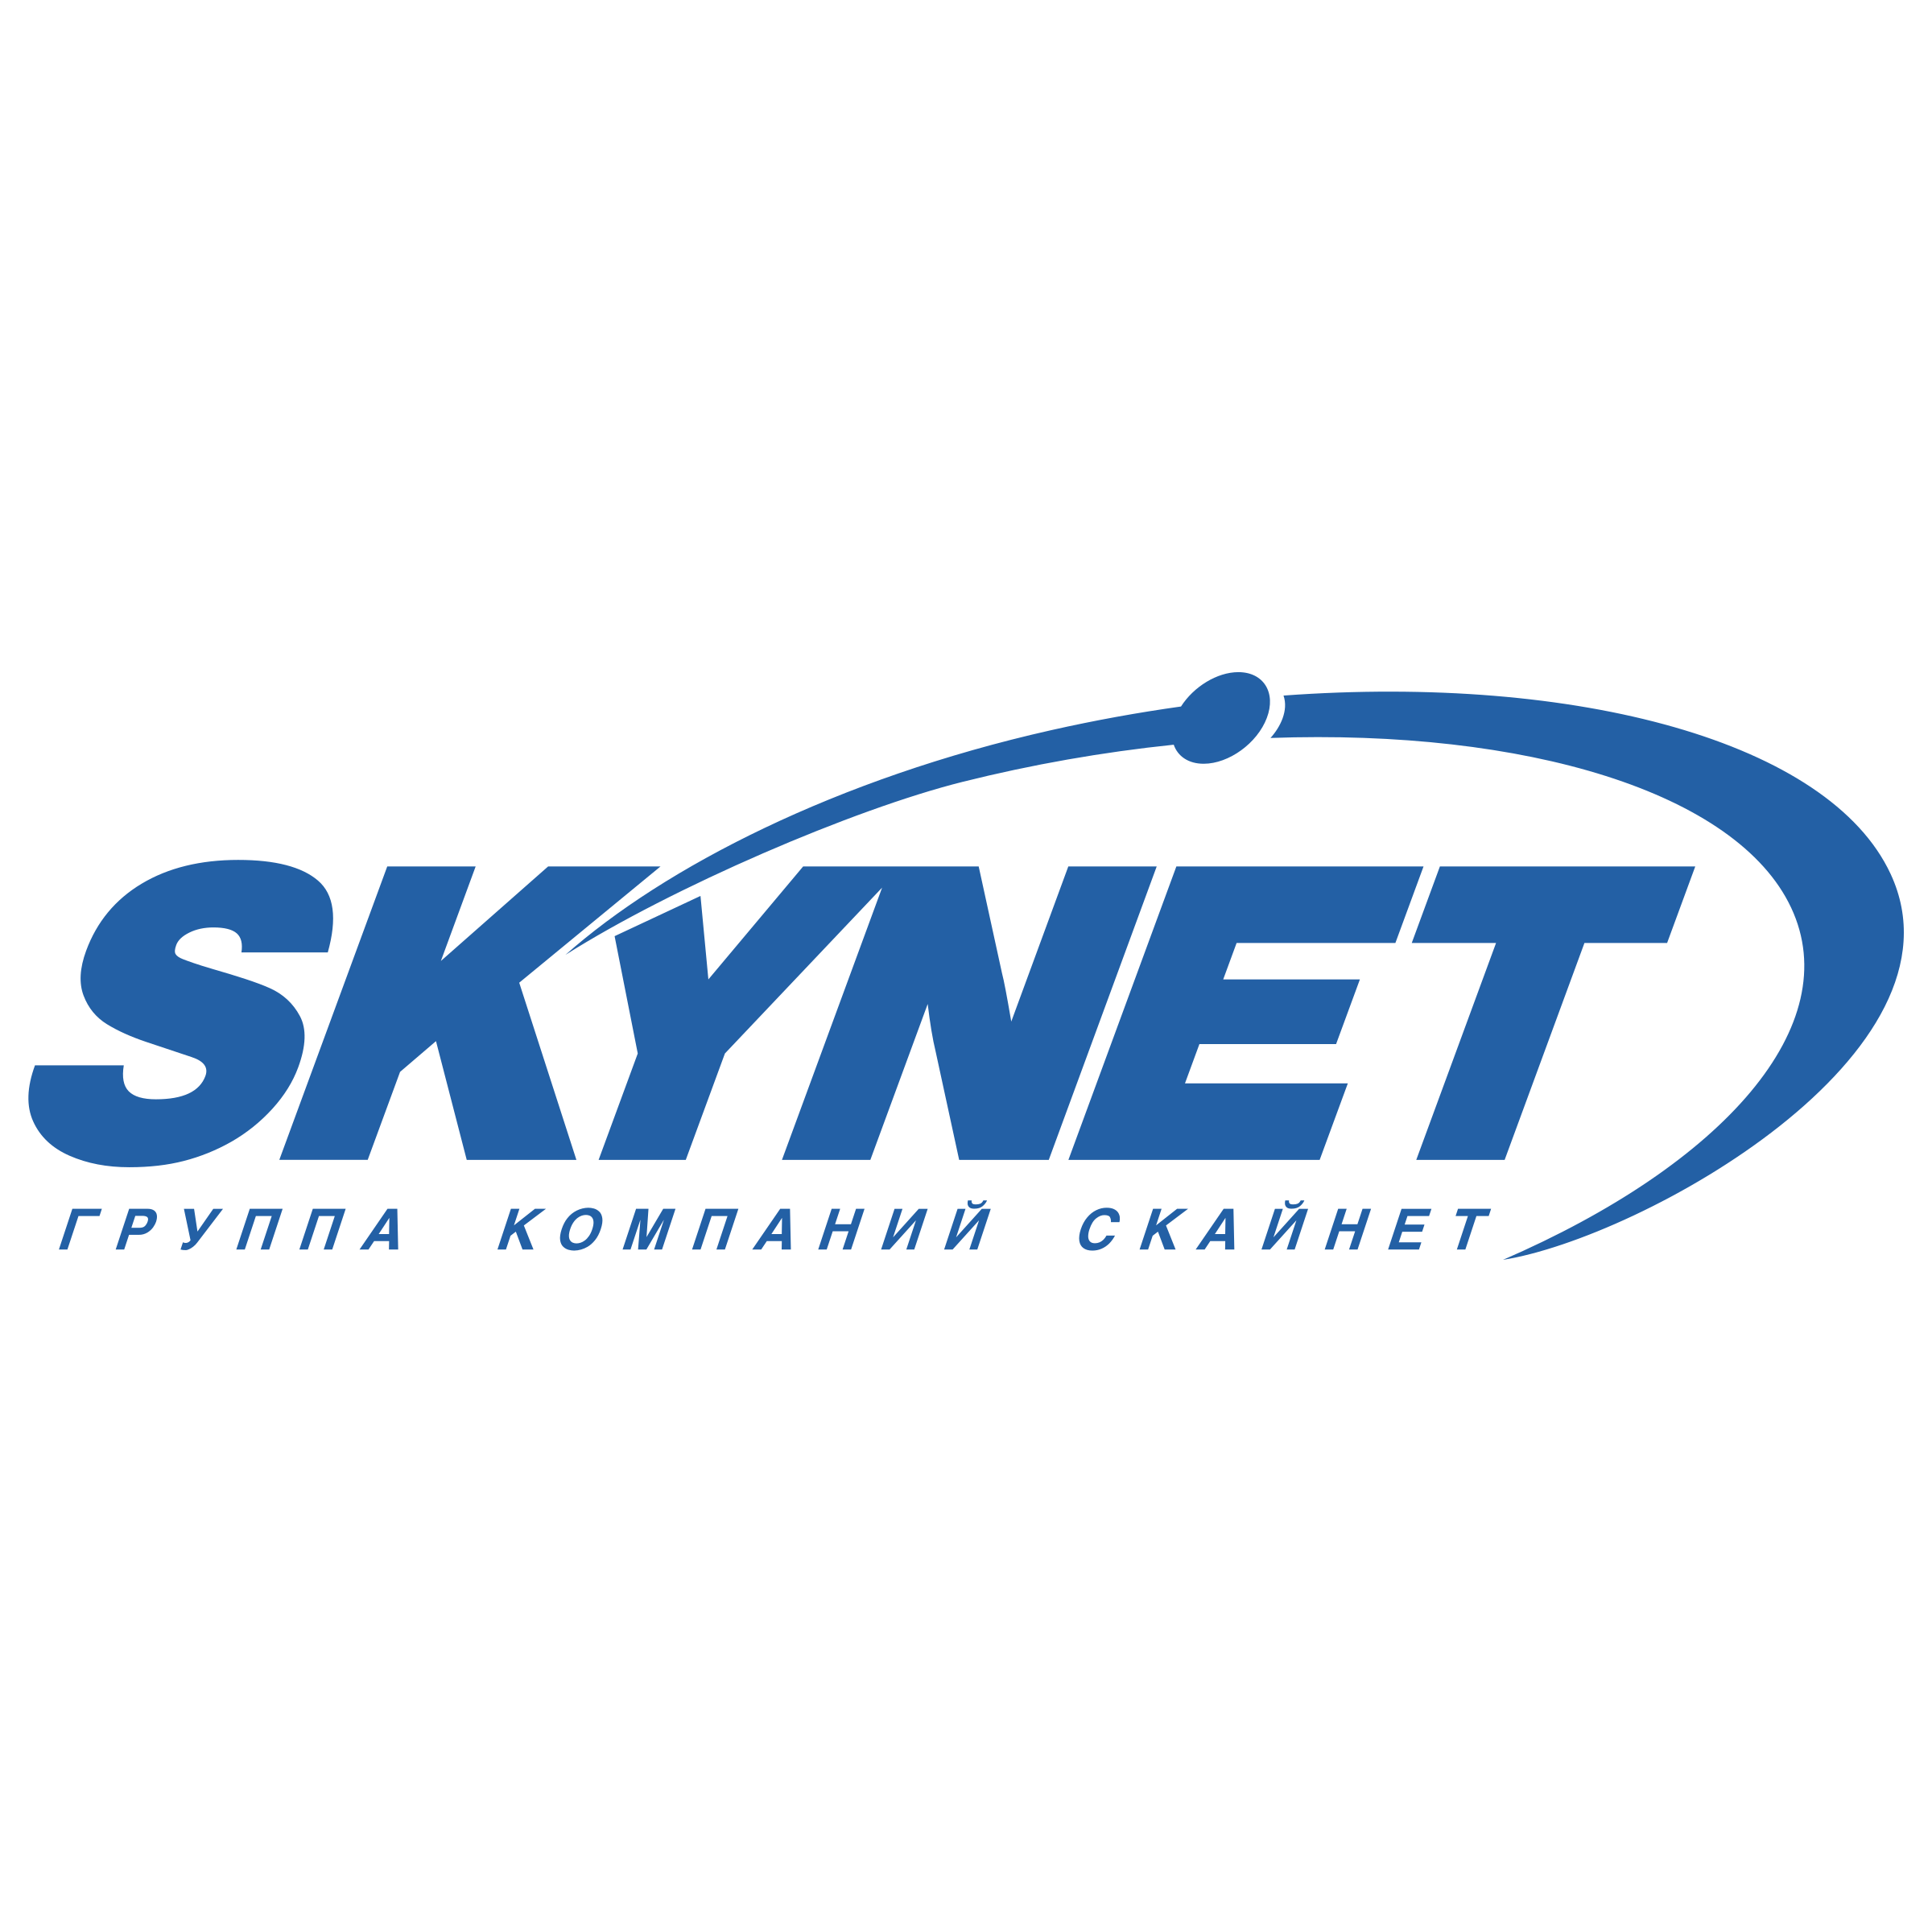 Skynet Logo - Skynet Logo PNG Transparent & SVG Vector